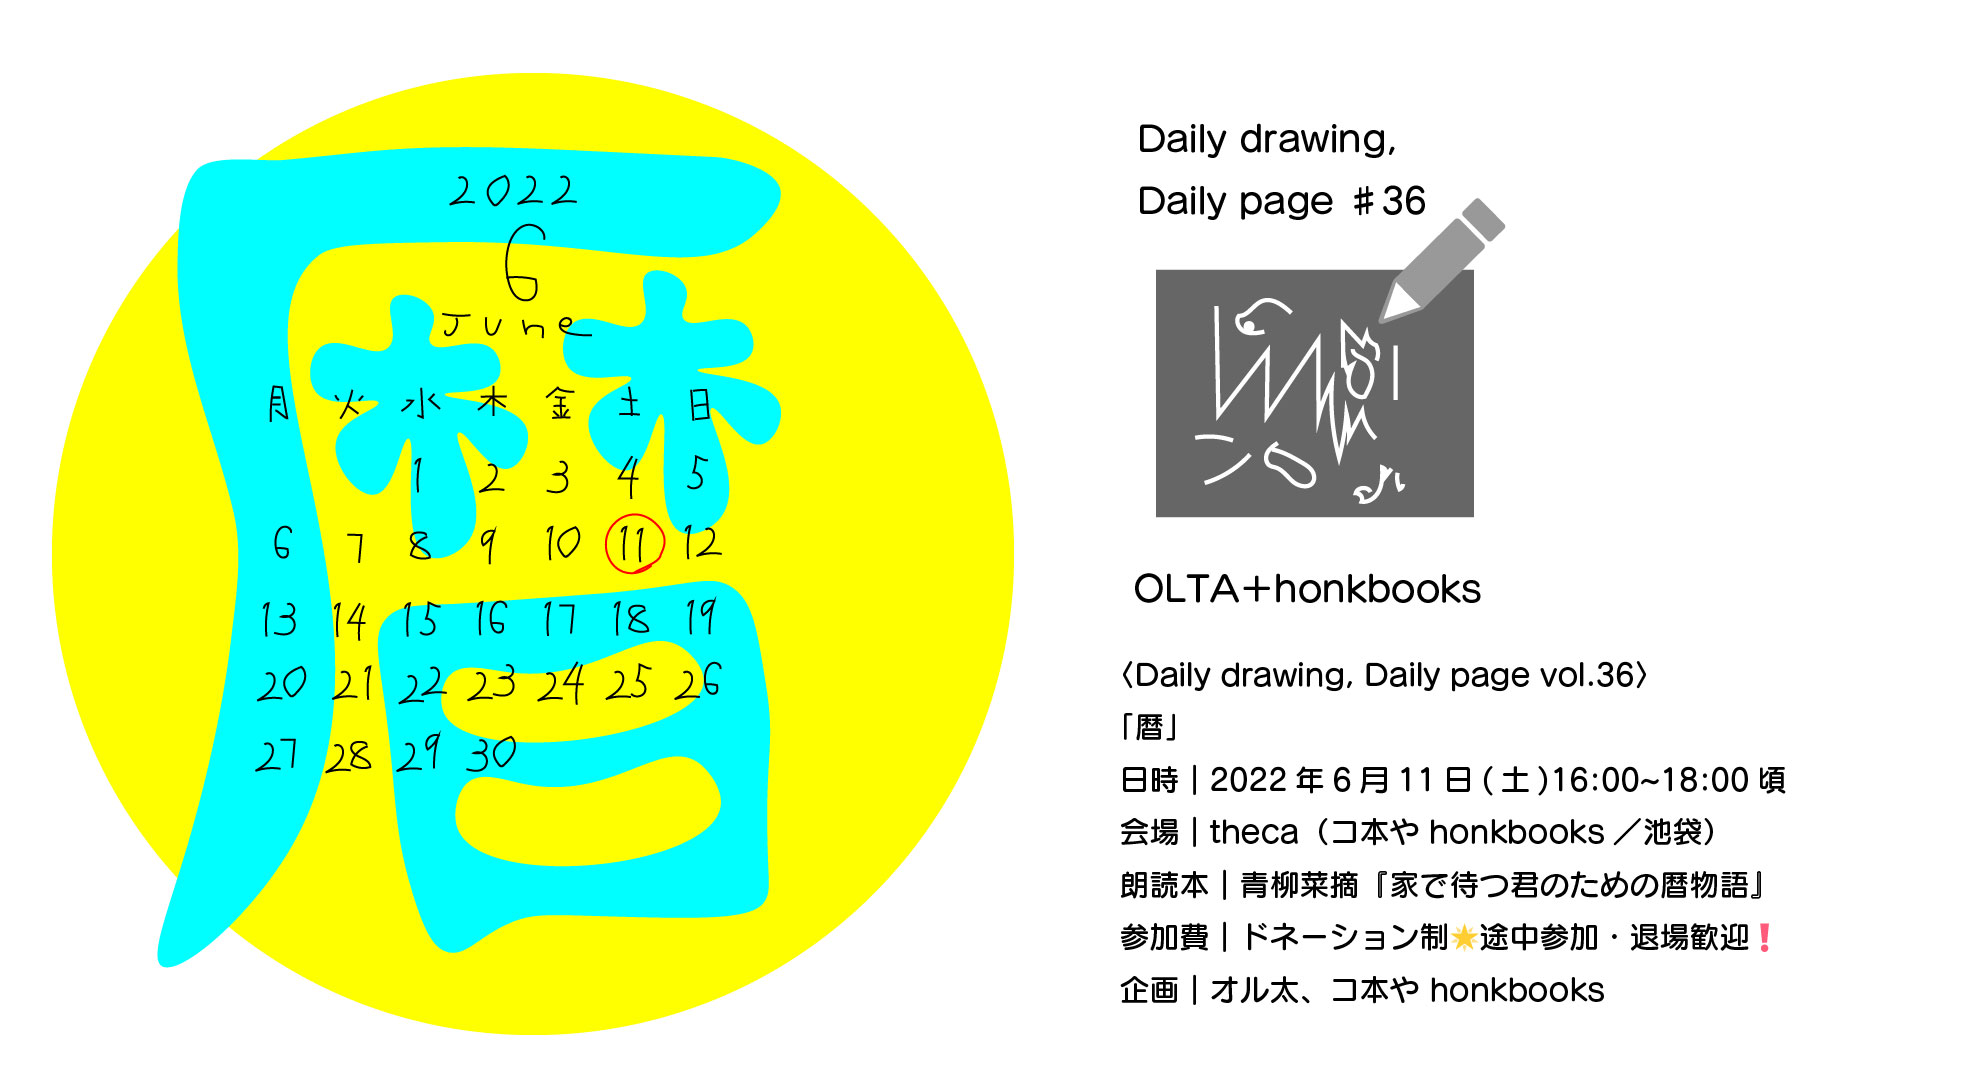 オル太＋コ本や〈Daily drawing, Daily page〉vol.36「暦」2022/6/11(土)